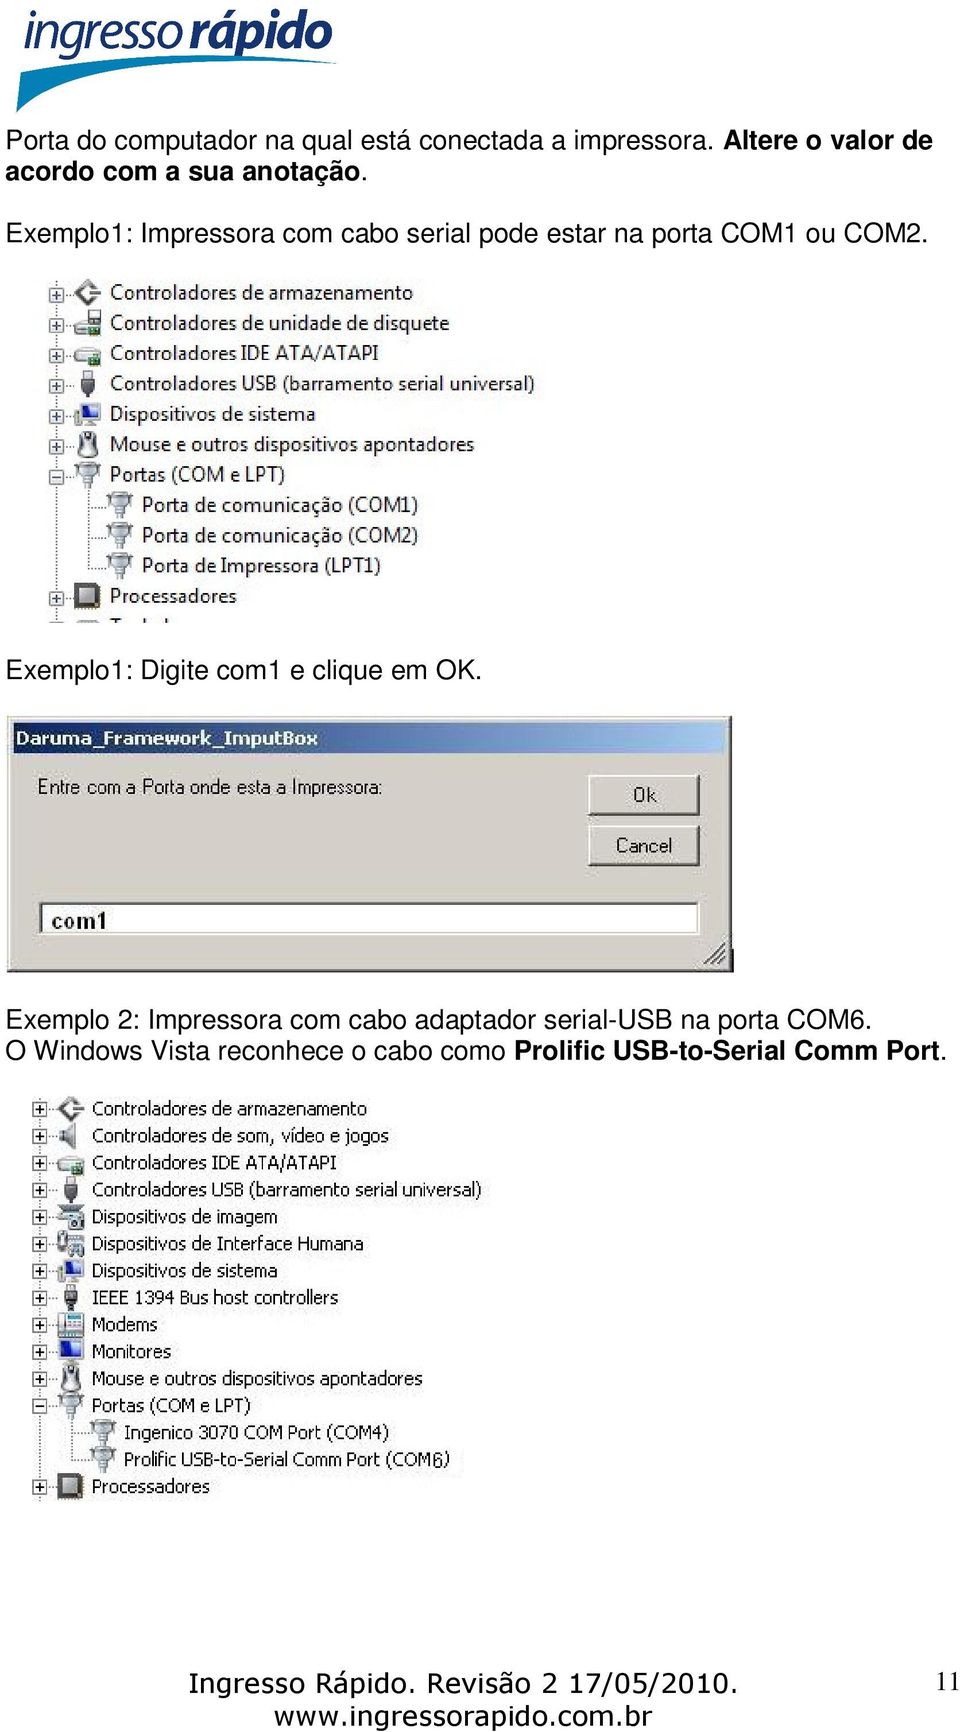 Exemplo1: Impressora com cabo serial pode estar na porta COM1 ou COM2.